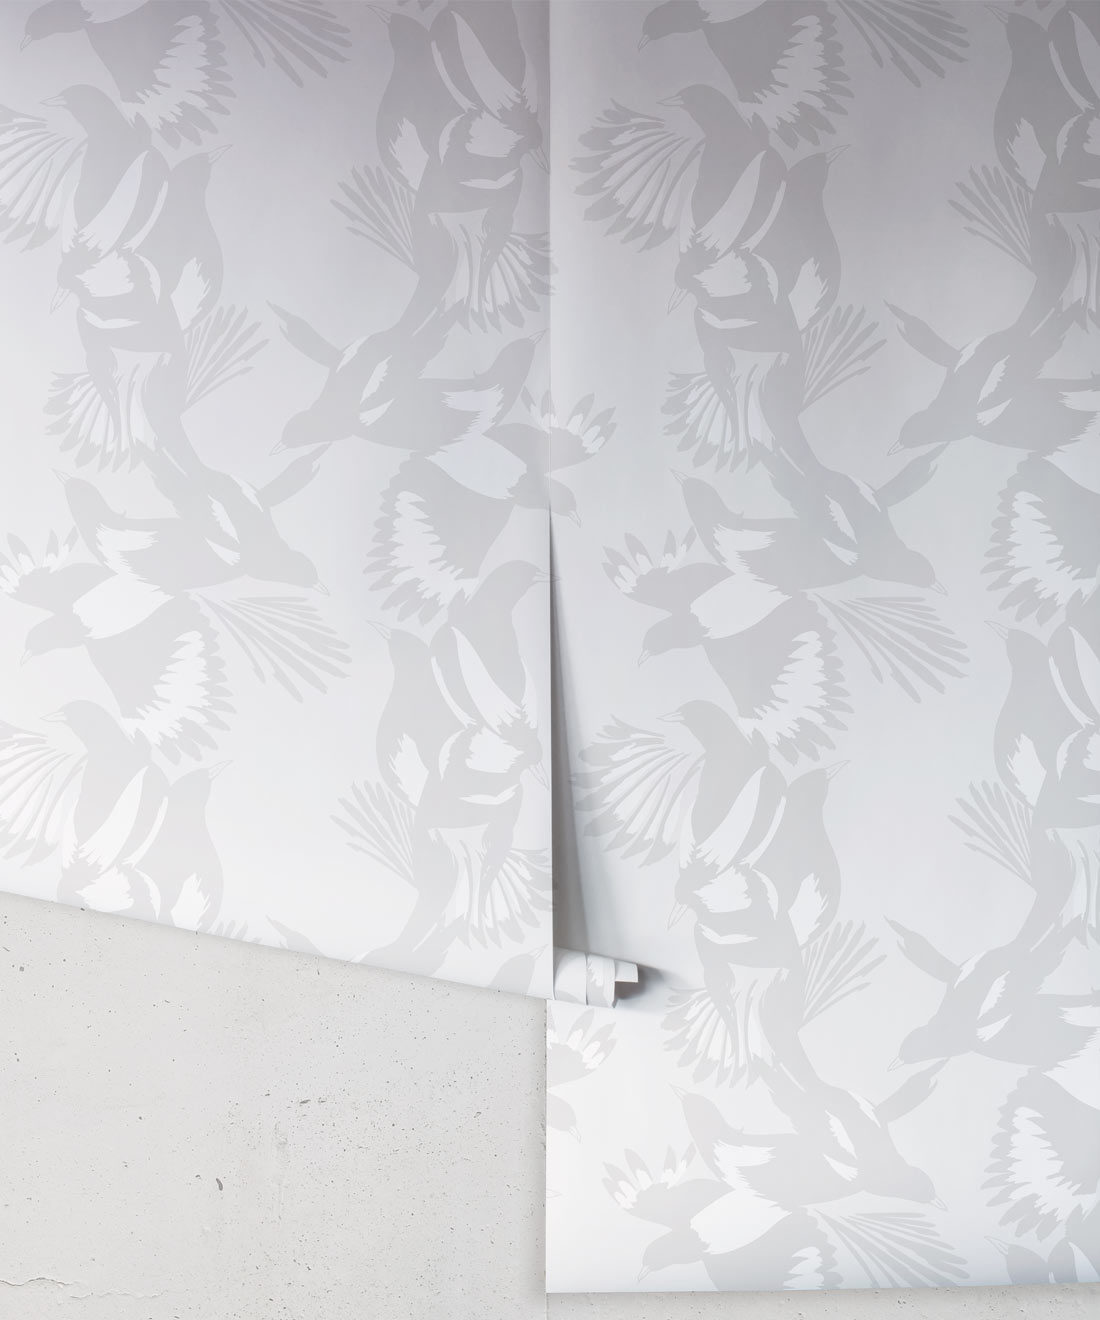 Magpie Wallpaper - Milton & King - Kingdom Home - Carta da parati con uccelli - Bondi Rotolo grigio